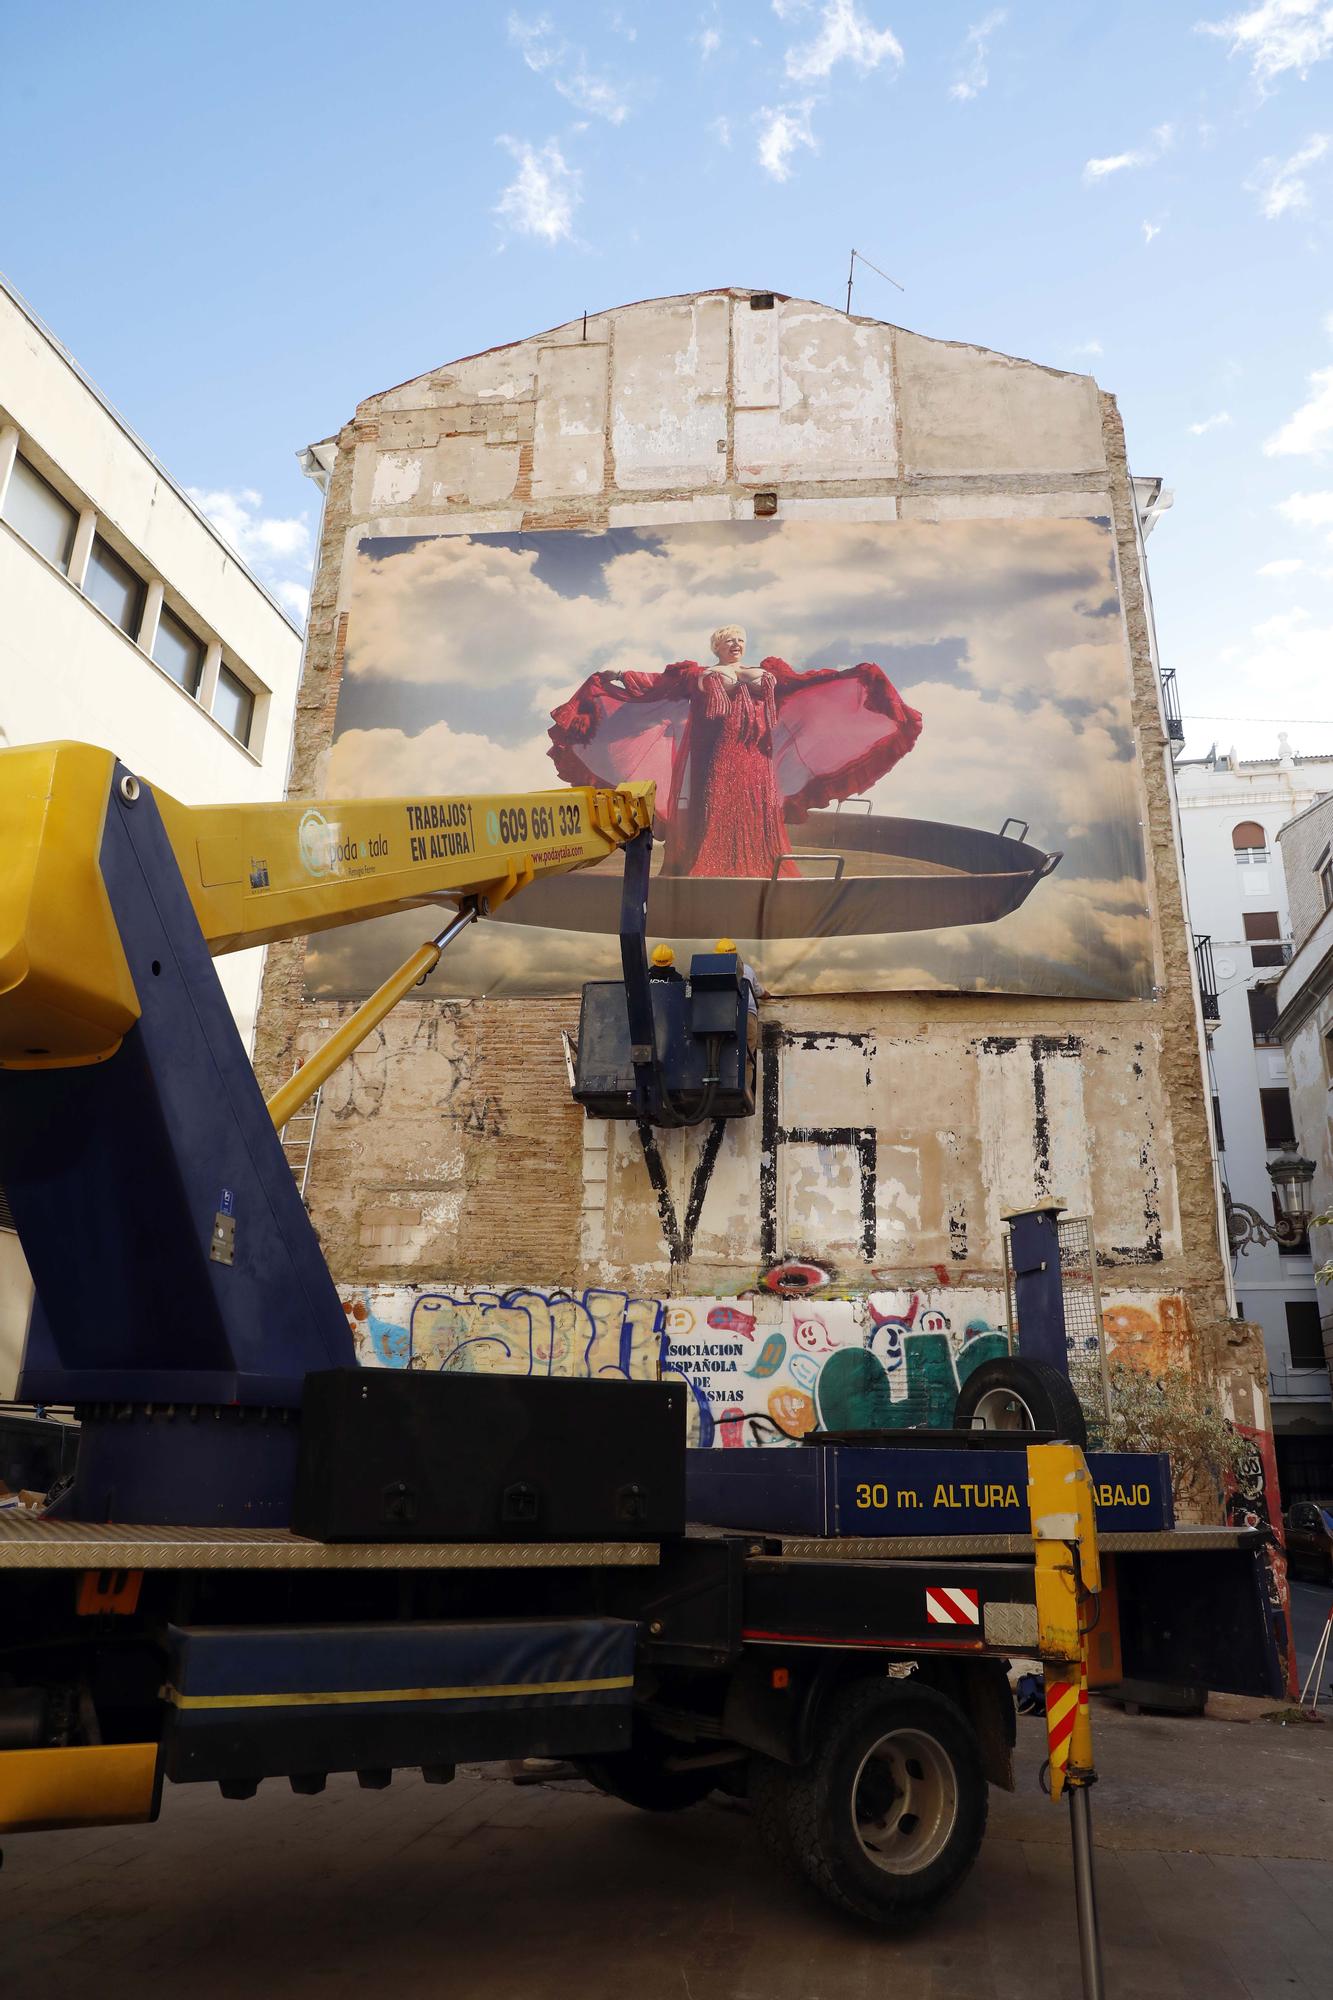 El mural de Rosita Amores vuelve a la calle Corretgería